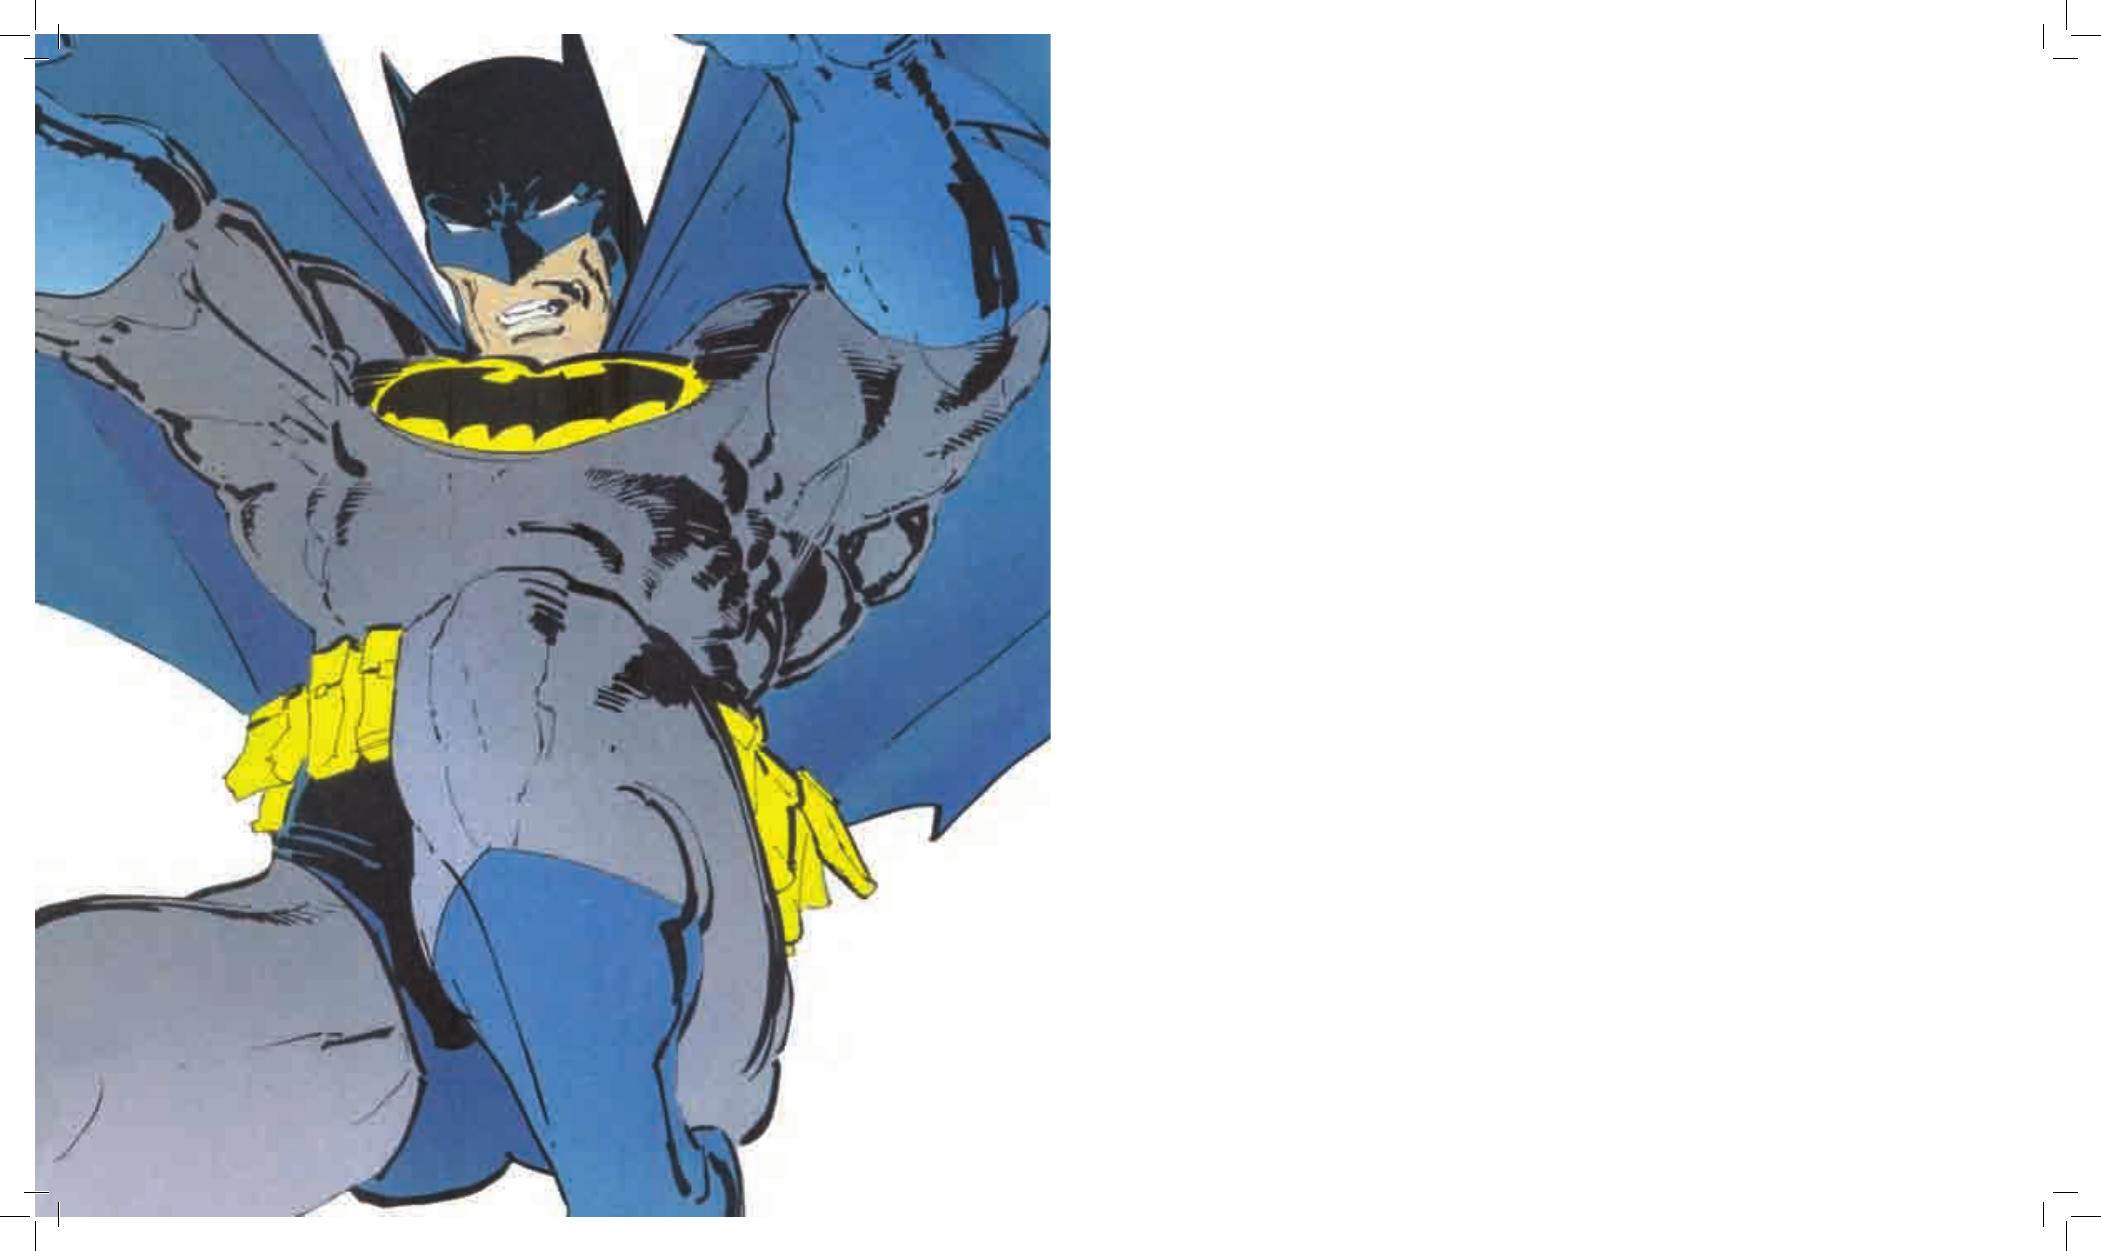 Capa de Batman: Return to Arkham é vazada por catálogo italiano